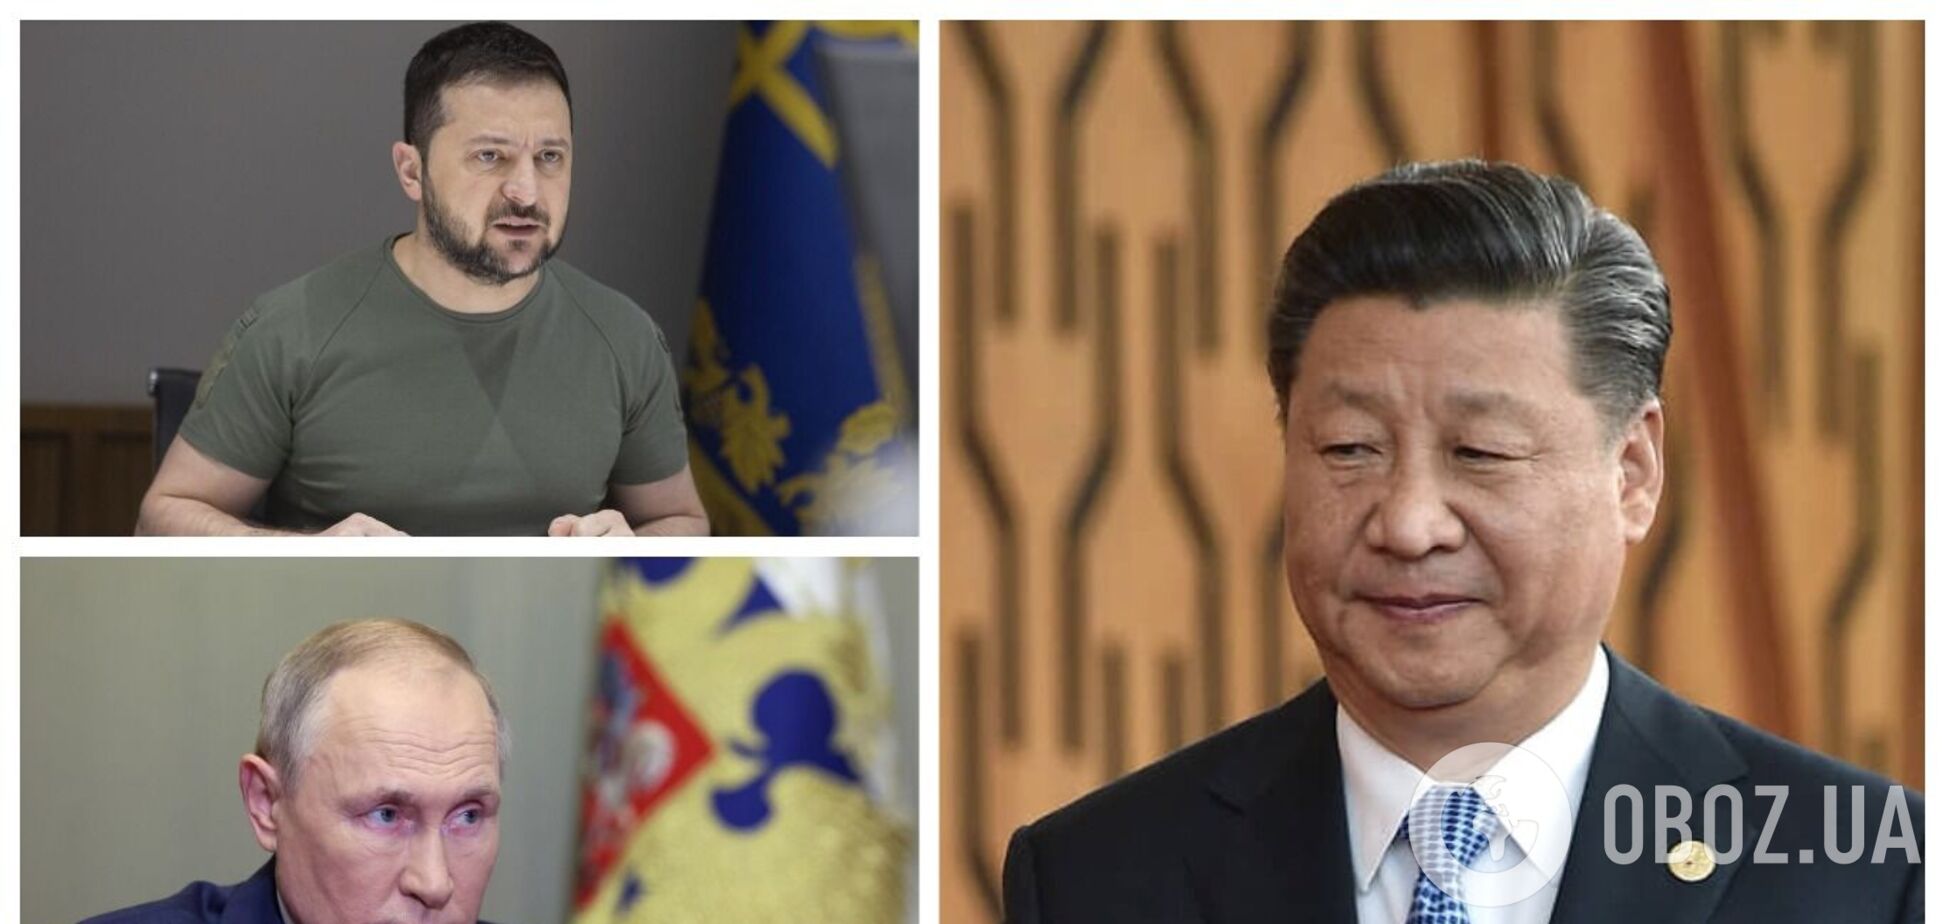 Си Цзиньпин призвал к прекращению войны в Украине путем мирных переговоров